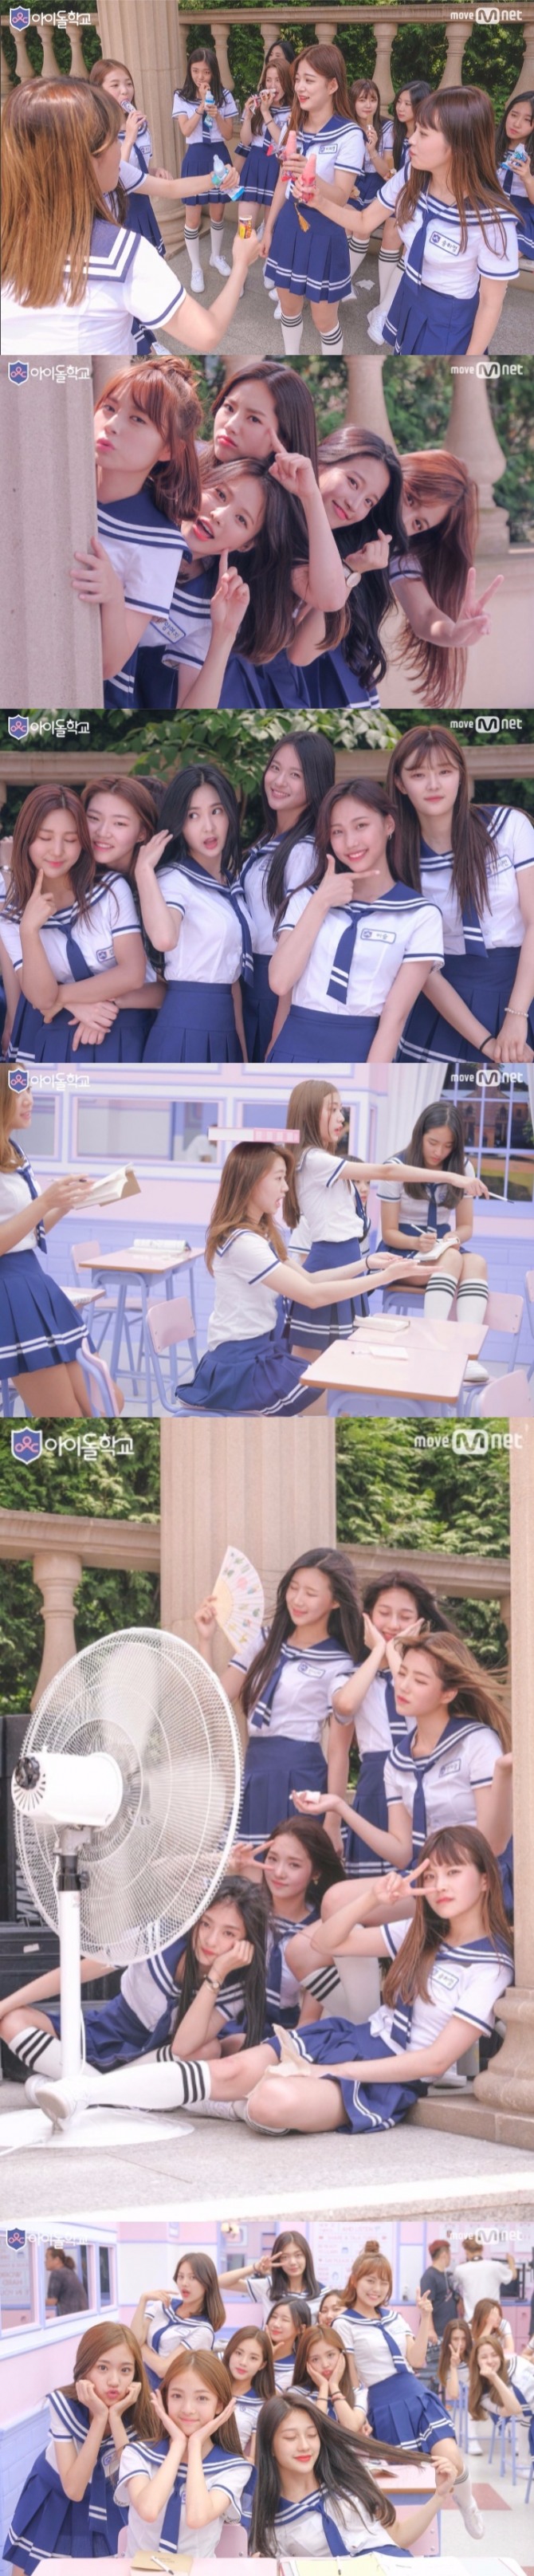 엠넷 '아이돌학교' 제작진은 25일 쉬는 시간의 일상을 담은 비하인드 컷을 공개해 기대감을 높였다. 사진=엠넷 제공